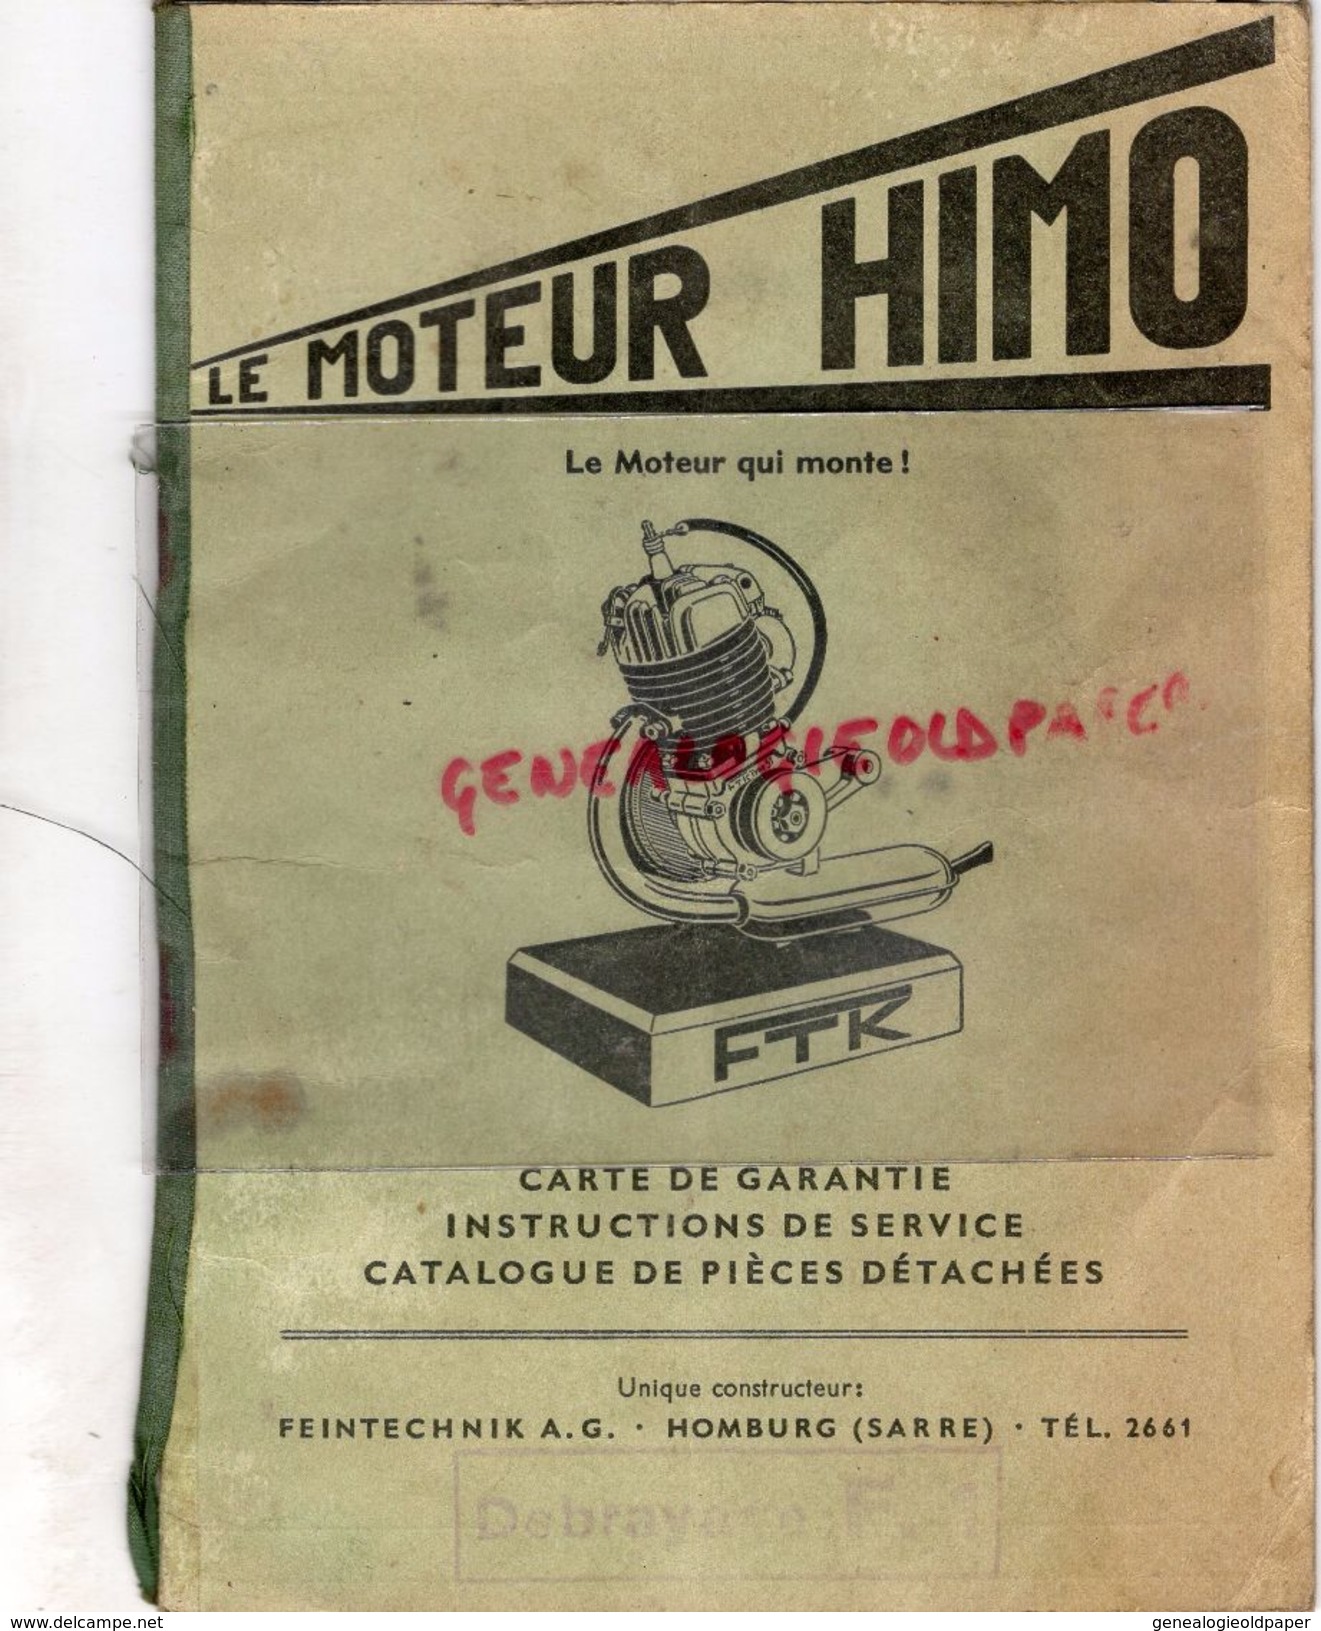 ALLEMAGNE- LE MOTEUR HIMO TYPE 51- FTK- FEINTECHNIK A.G. HOMBURG-SARRE- 1953- - Cars